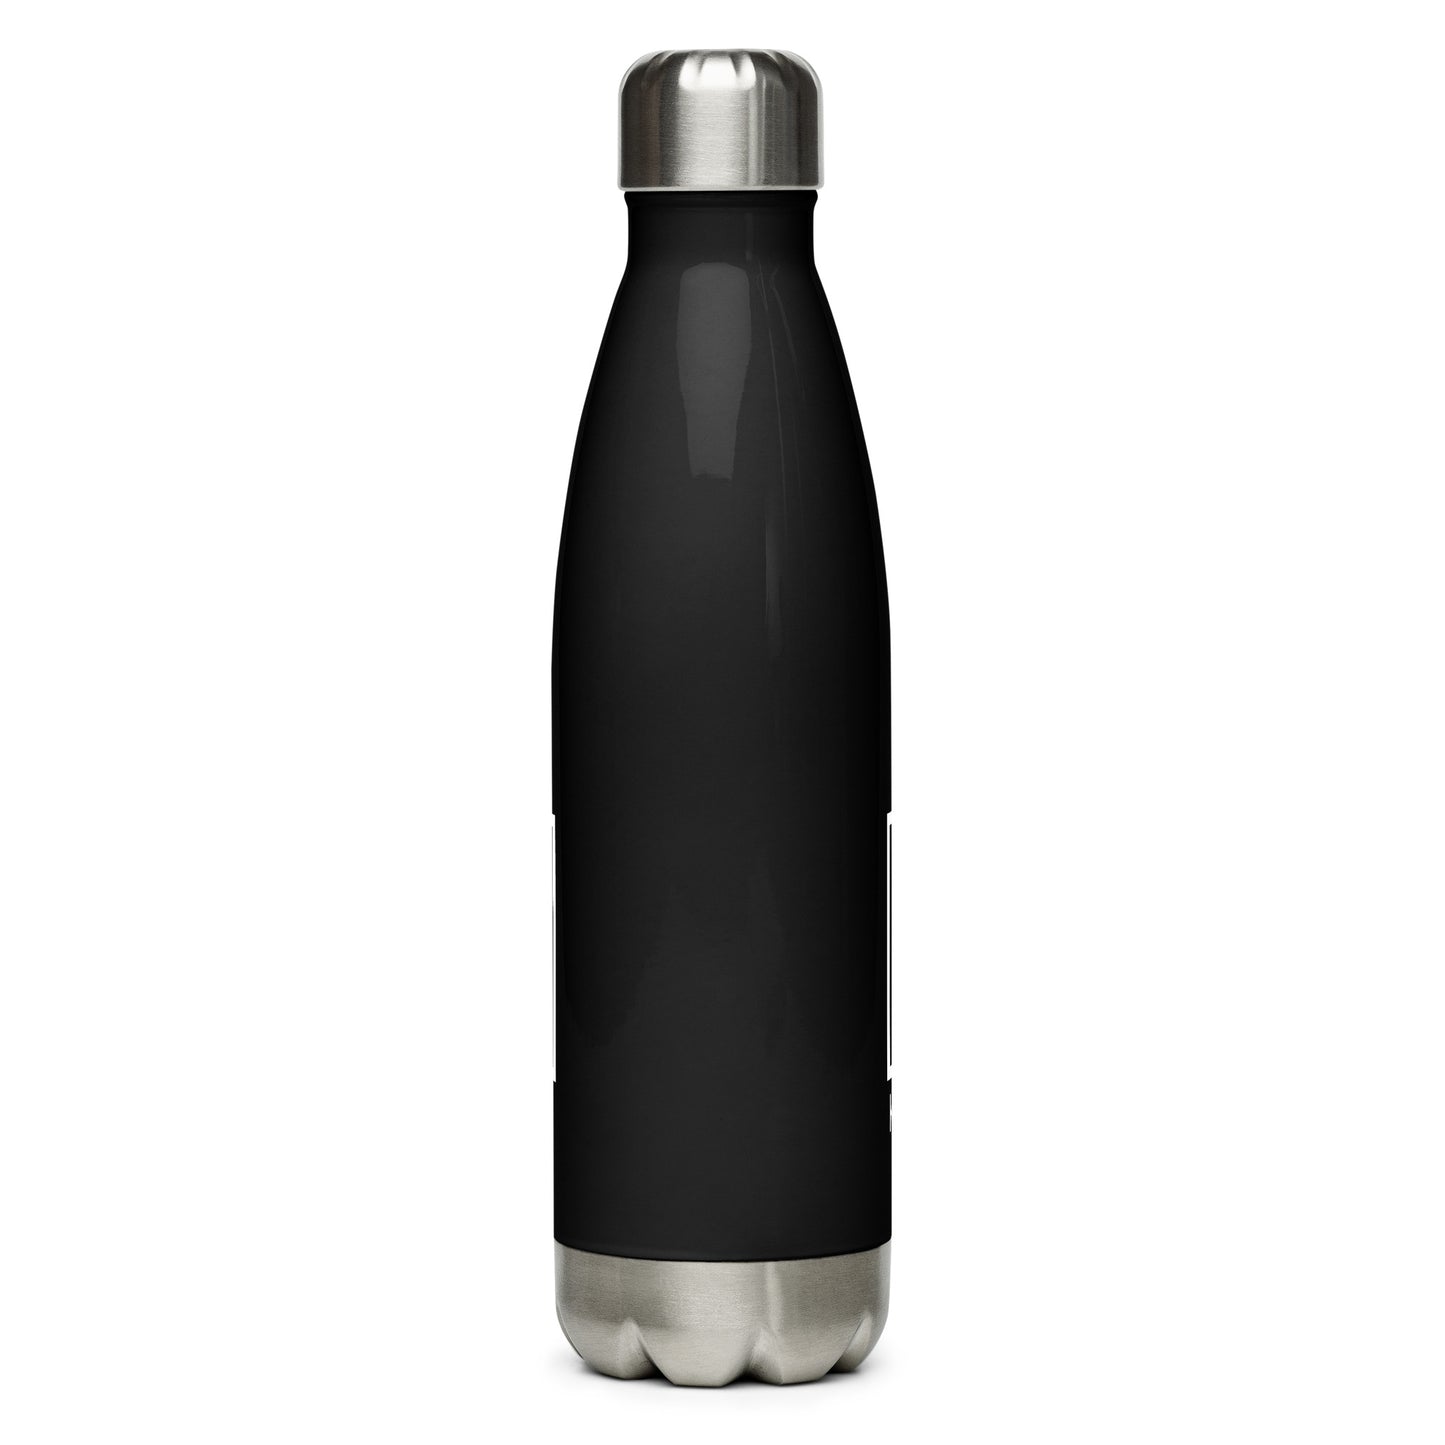 AAWC Stainless steel water bottle